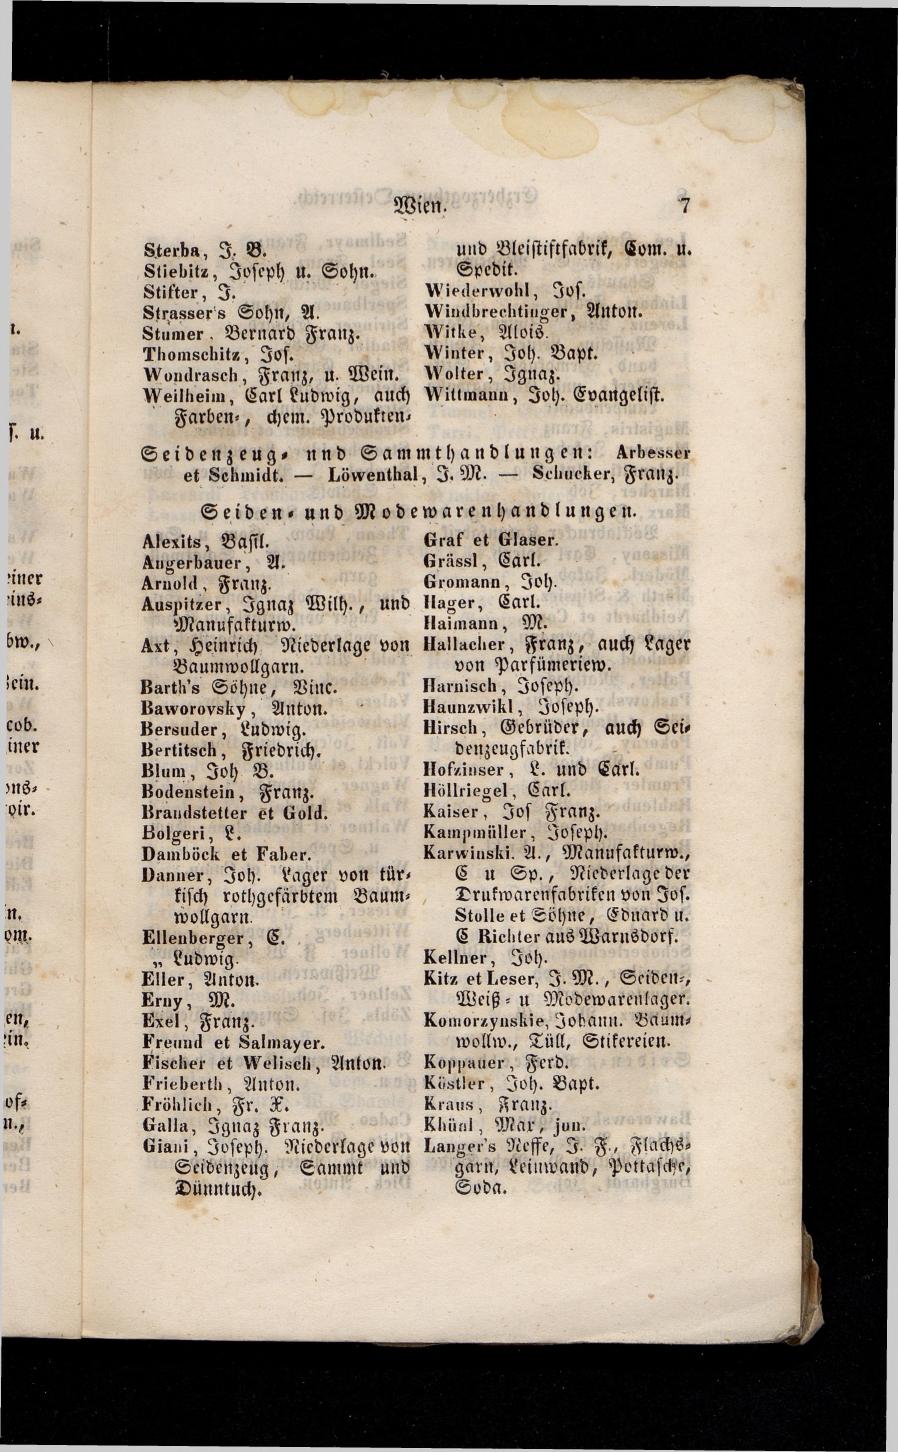 Grosses Adressbuch der Kaufleute. No. 13. Oesterreich ober u. unter der Enns 1844 - Seite 11